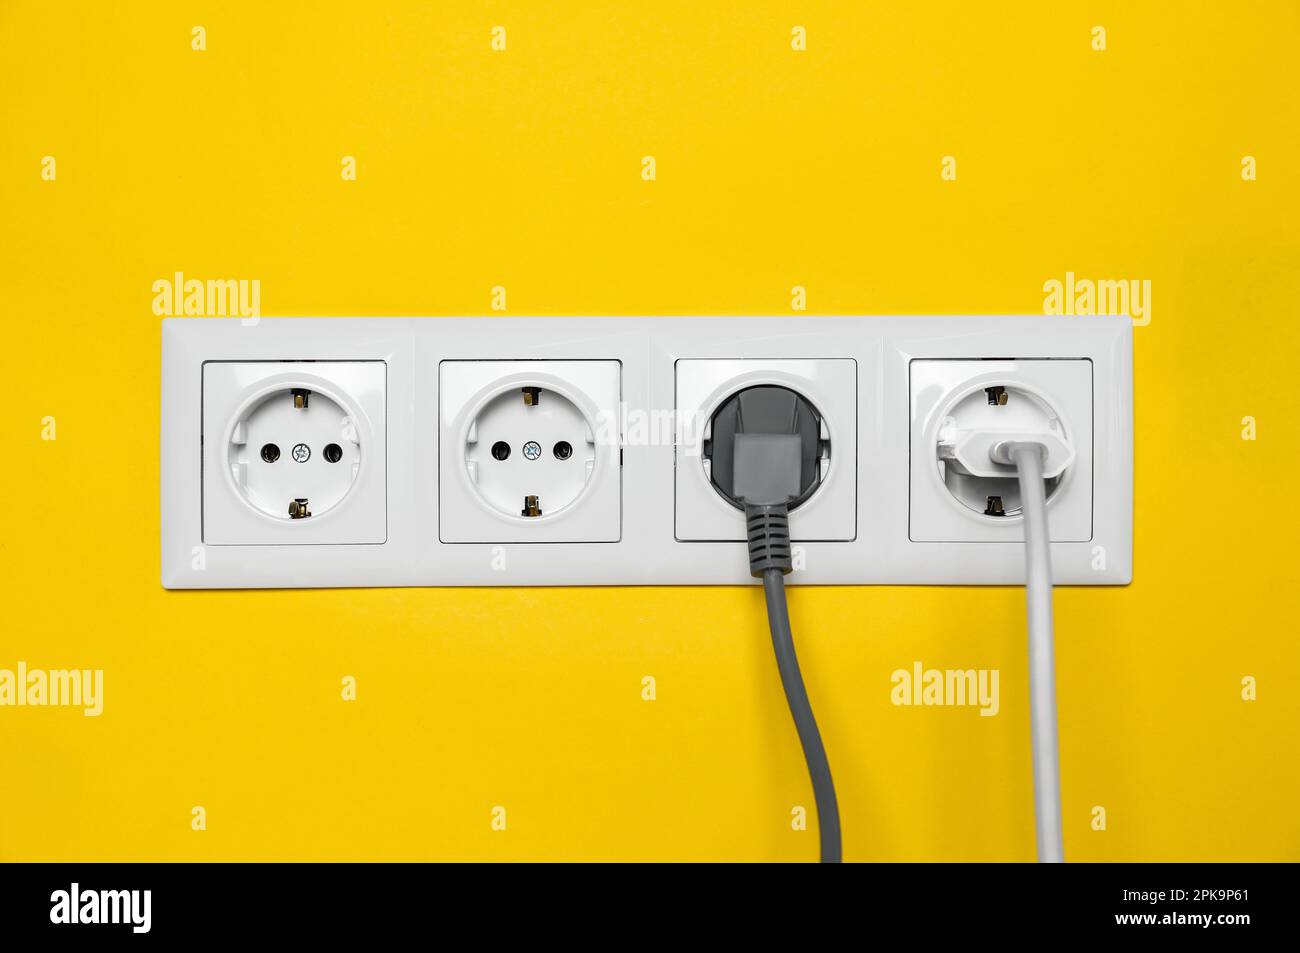 Steckdosen mit eingesteckten Steckern an der gelben Wand. Stromversorgung  Stockfotografie - Alamy